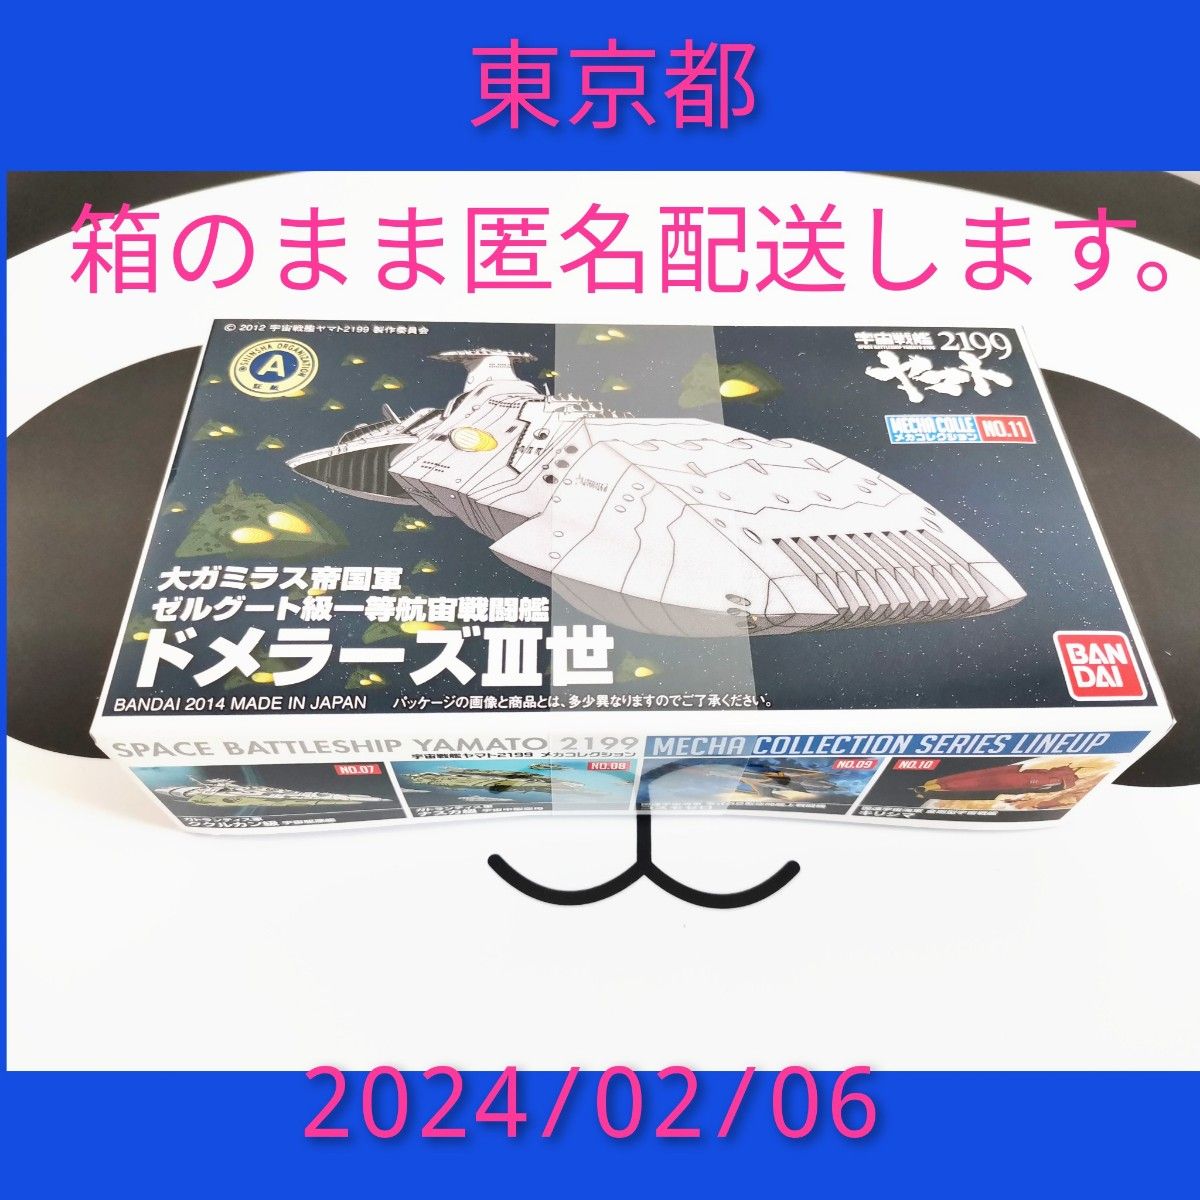 宇宙戦艦ヤマト2199 メカコレクション No.11 ドメラーズⅢ世 メカコレ バンダイ 模型 プラモデル 宇宙船　 ガンプラ